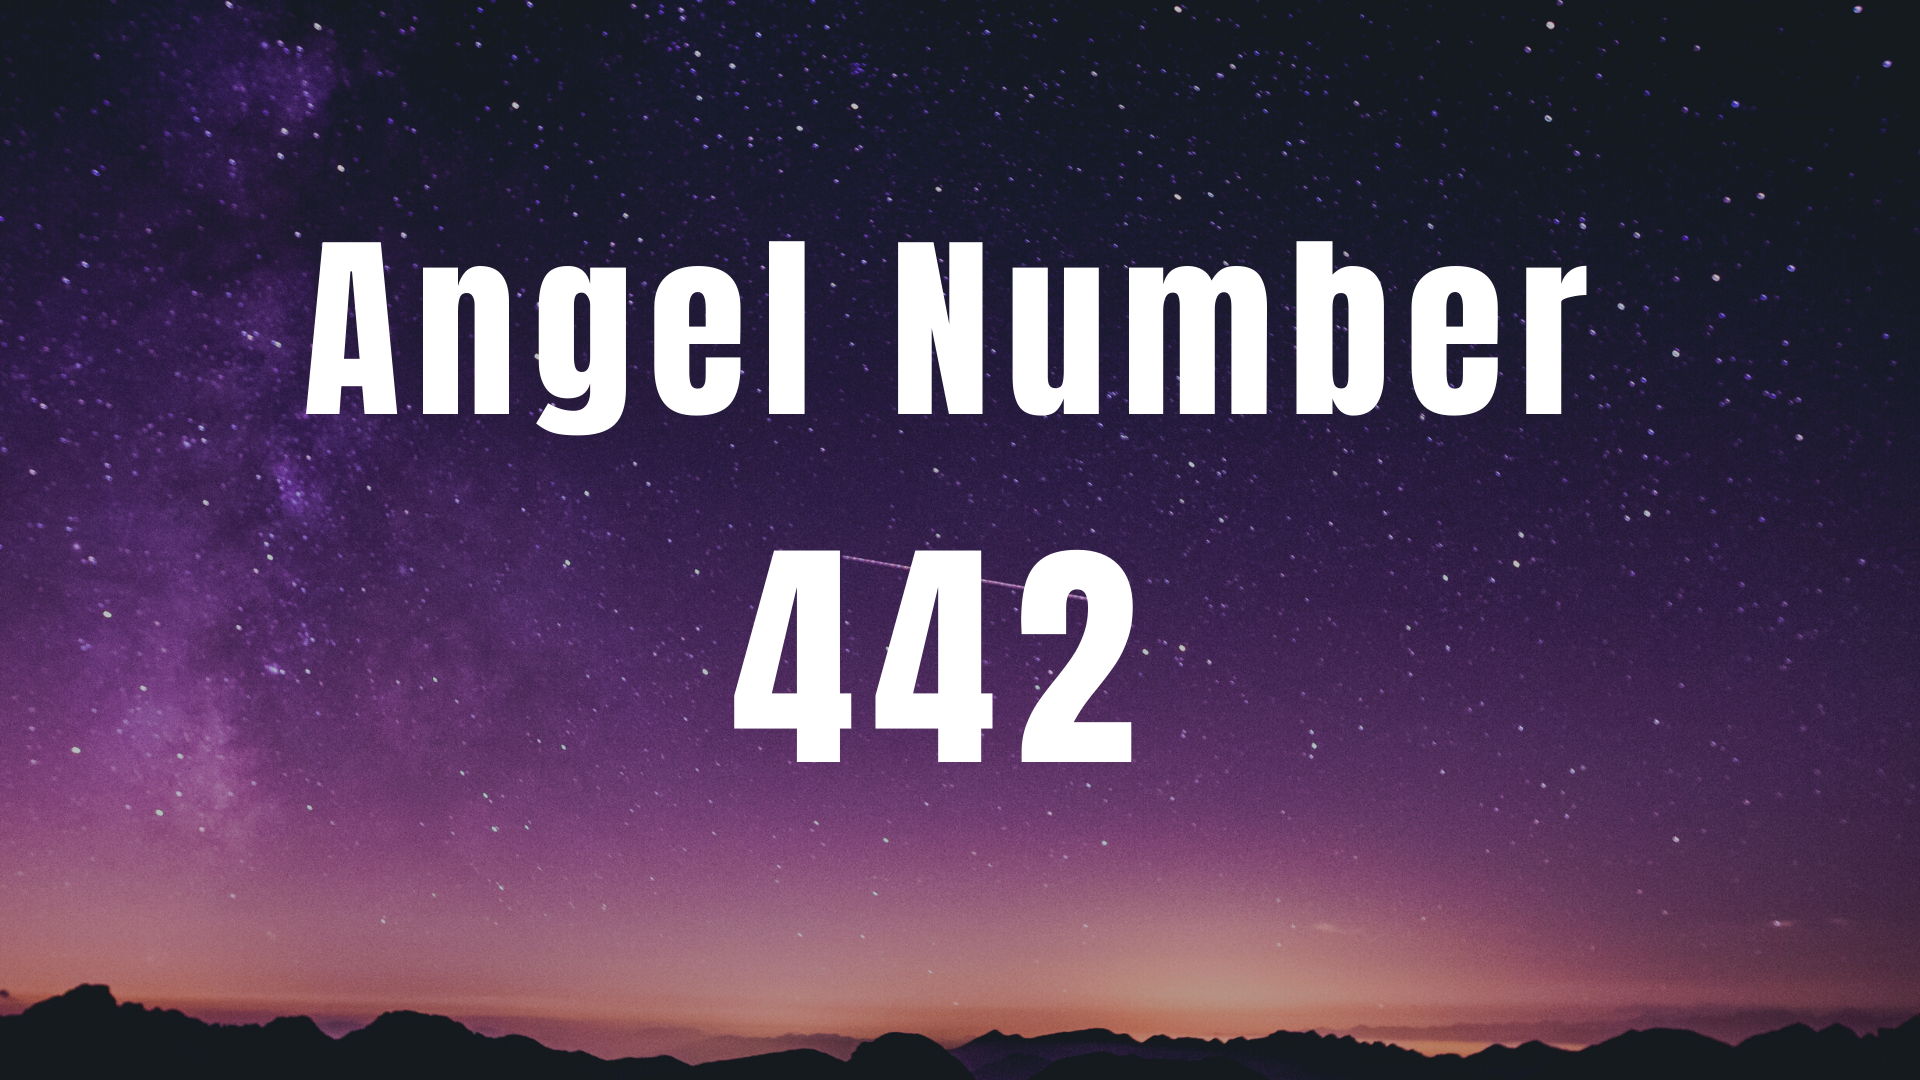 Angel Number 442